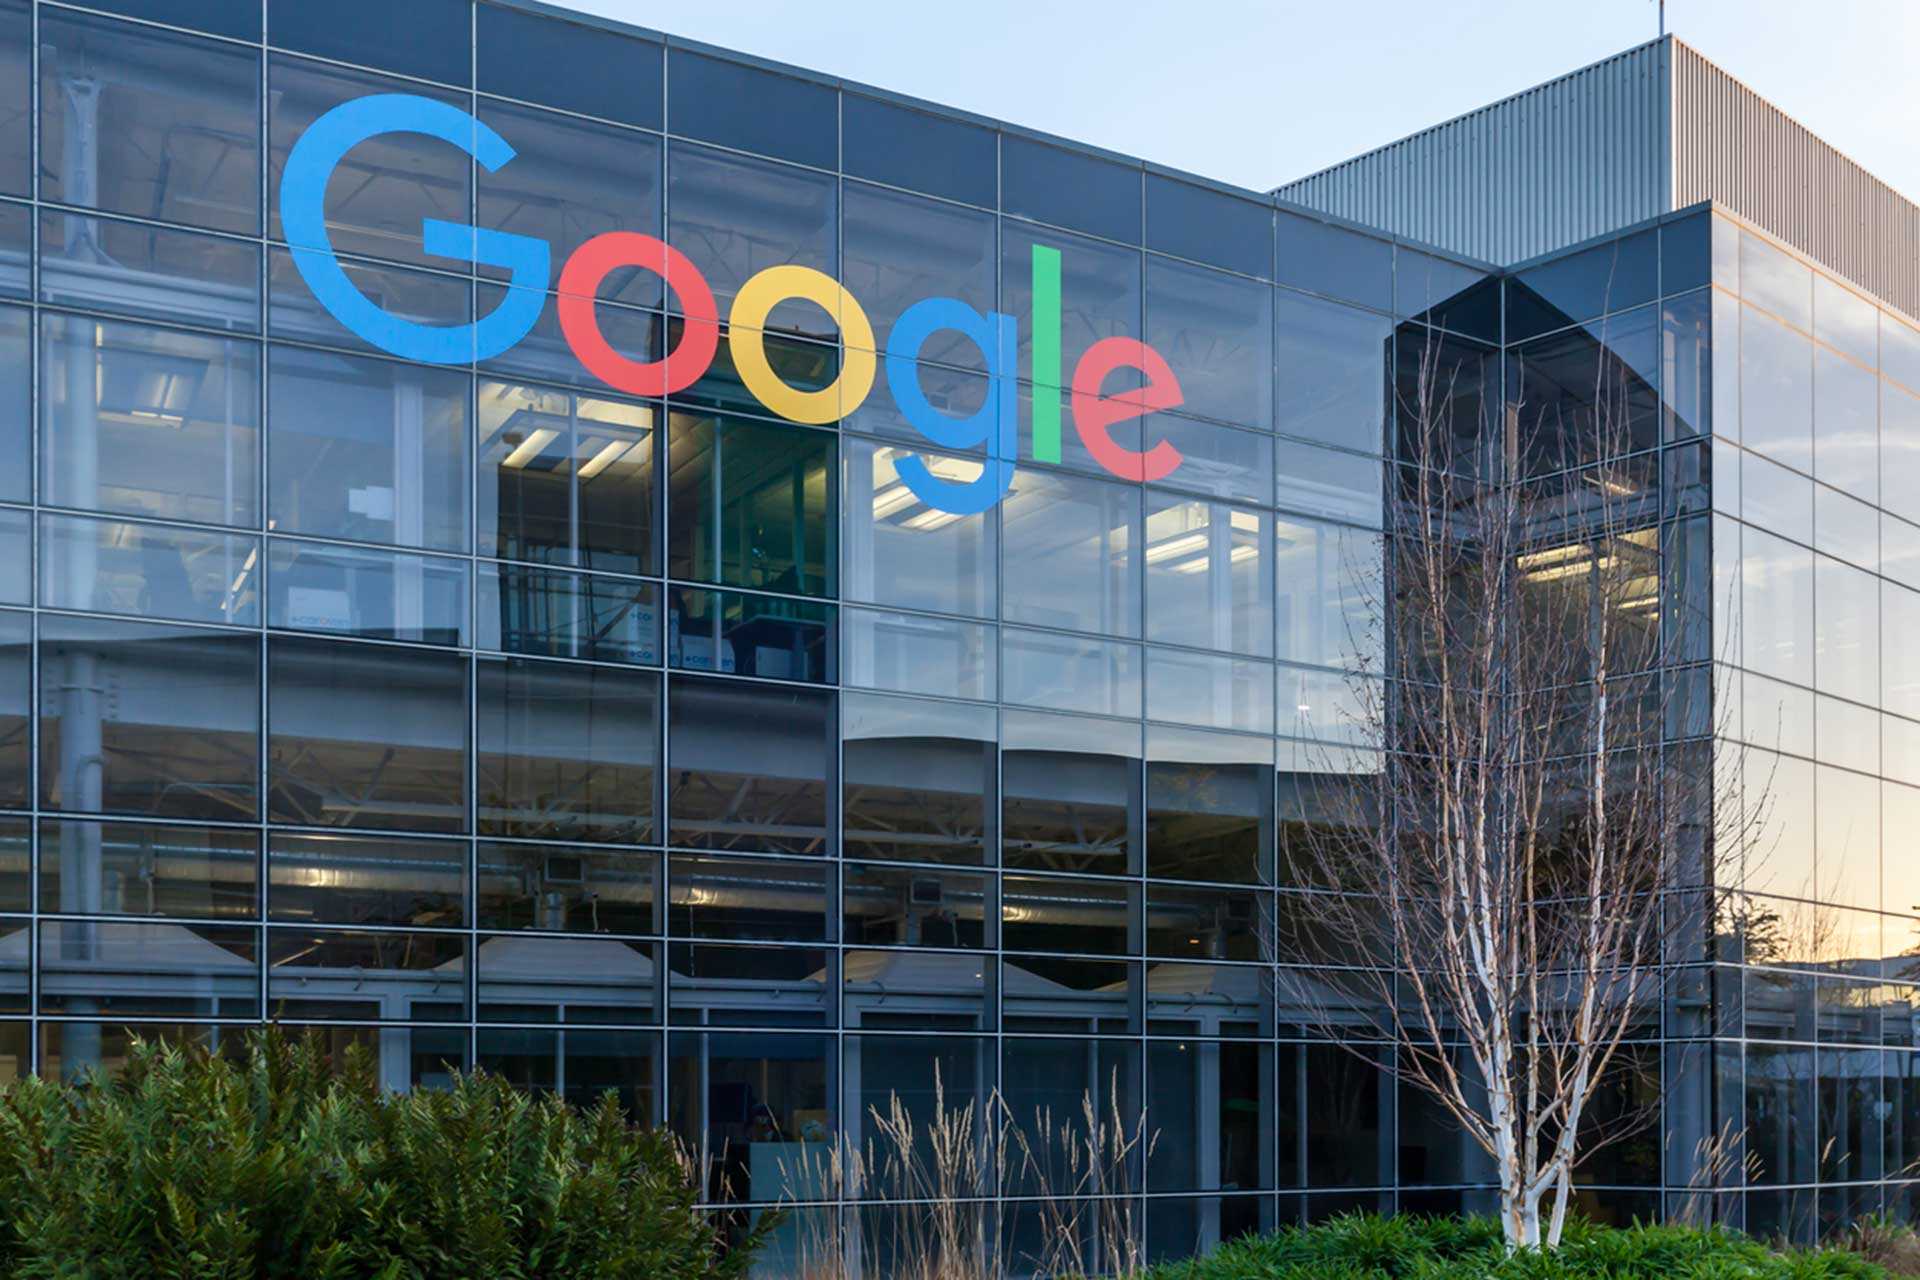 Google, genel merkezi Mountain View, California'da bulunan ve sözde Googleplex'te bulunan çevrimiçi hizmetler sunan bir ABD şirketidir.